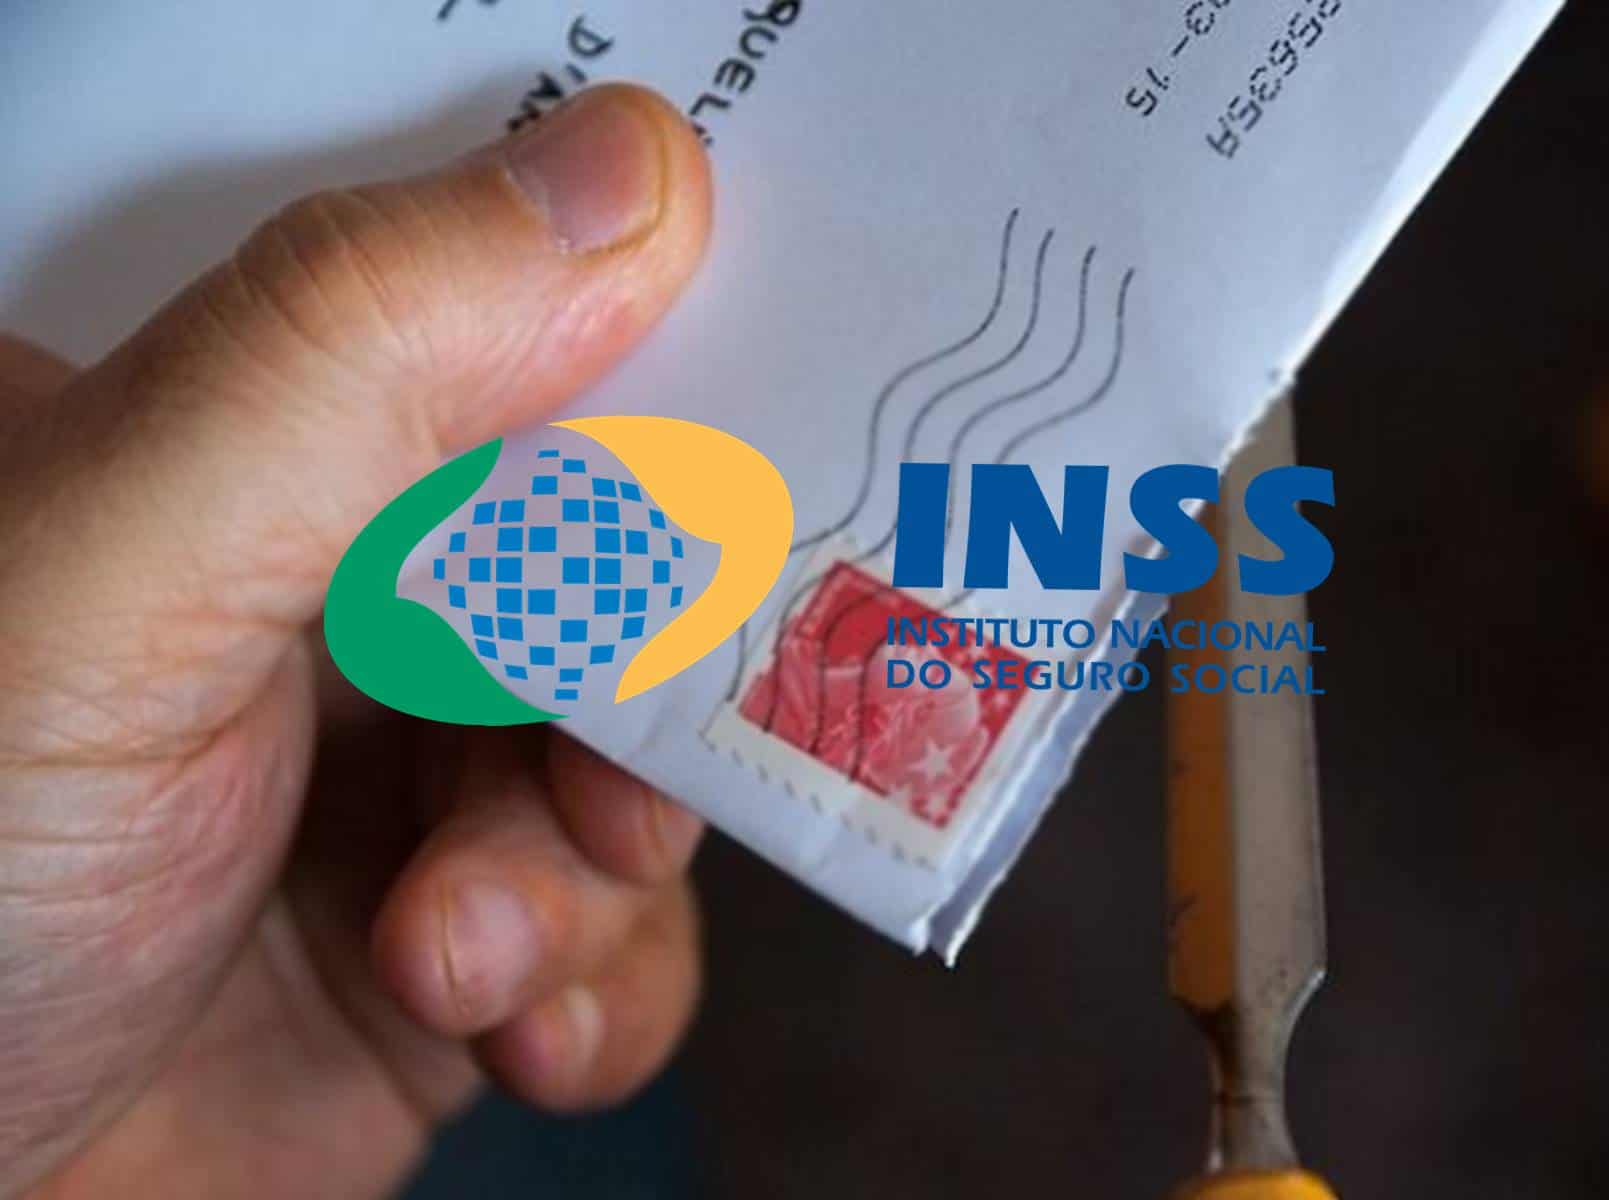 INSS: Como é carta e quais benefícios podem ser cortados